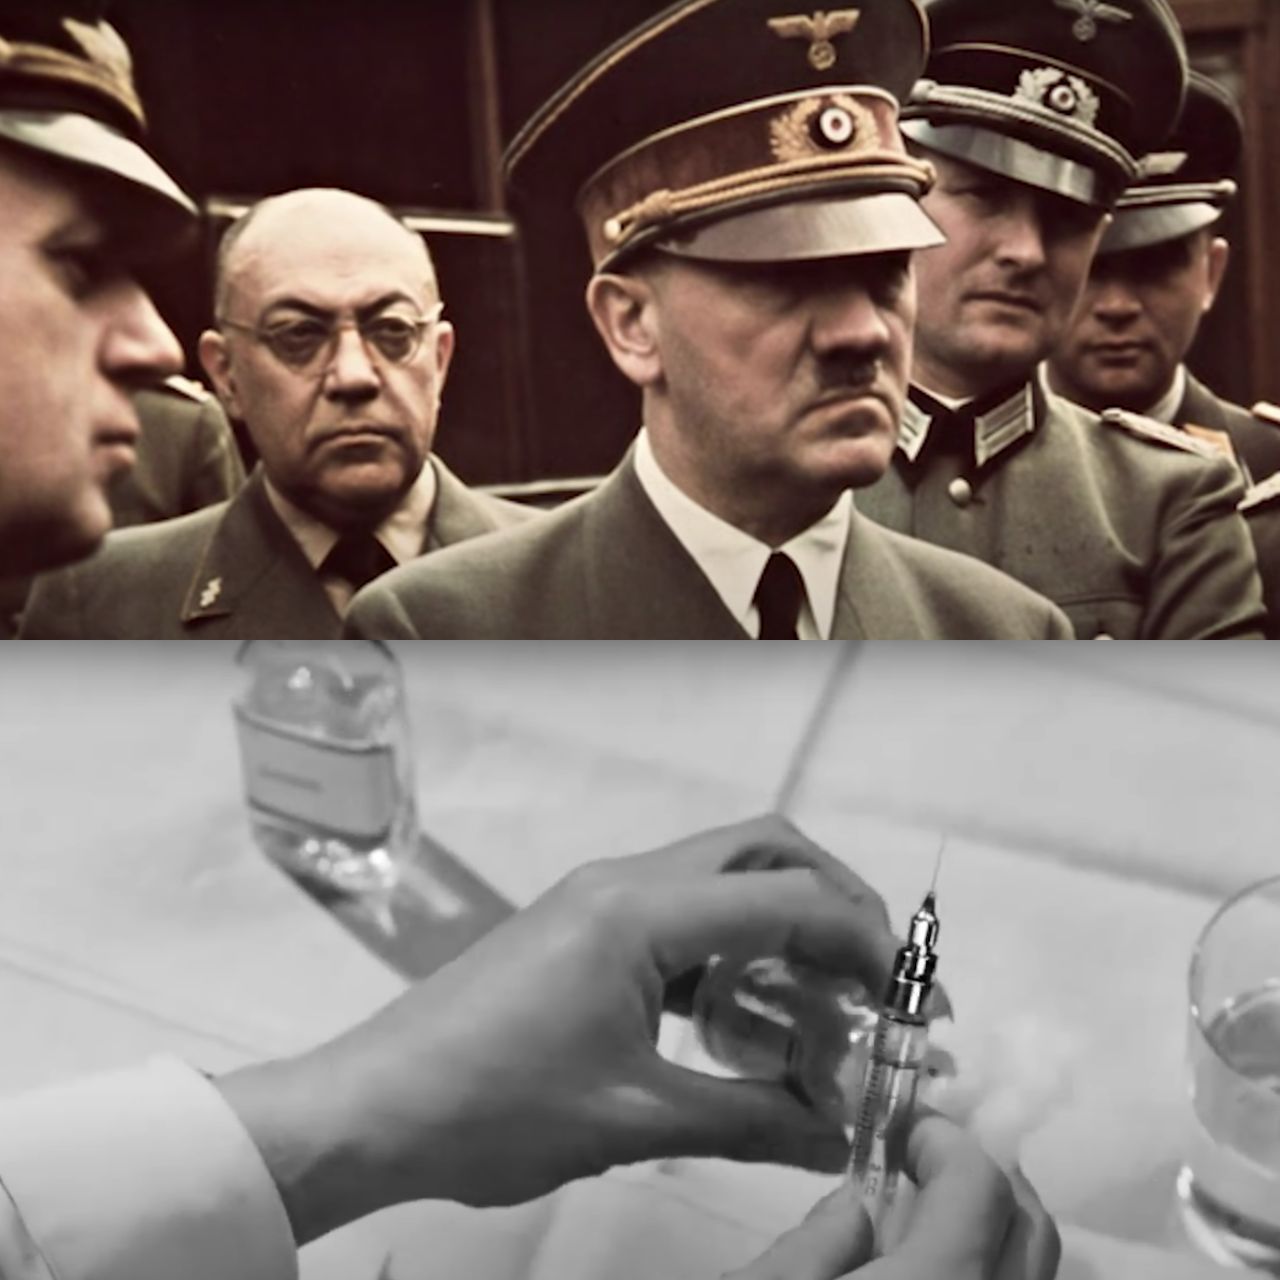 Nemecký diktátor Adolf Hitler, injekčná striekačka